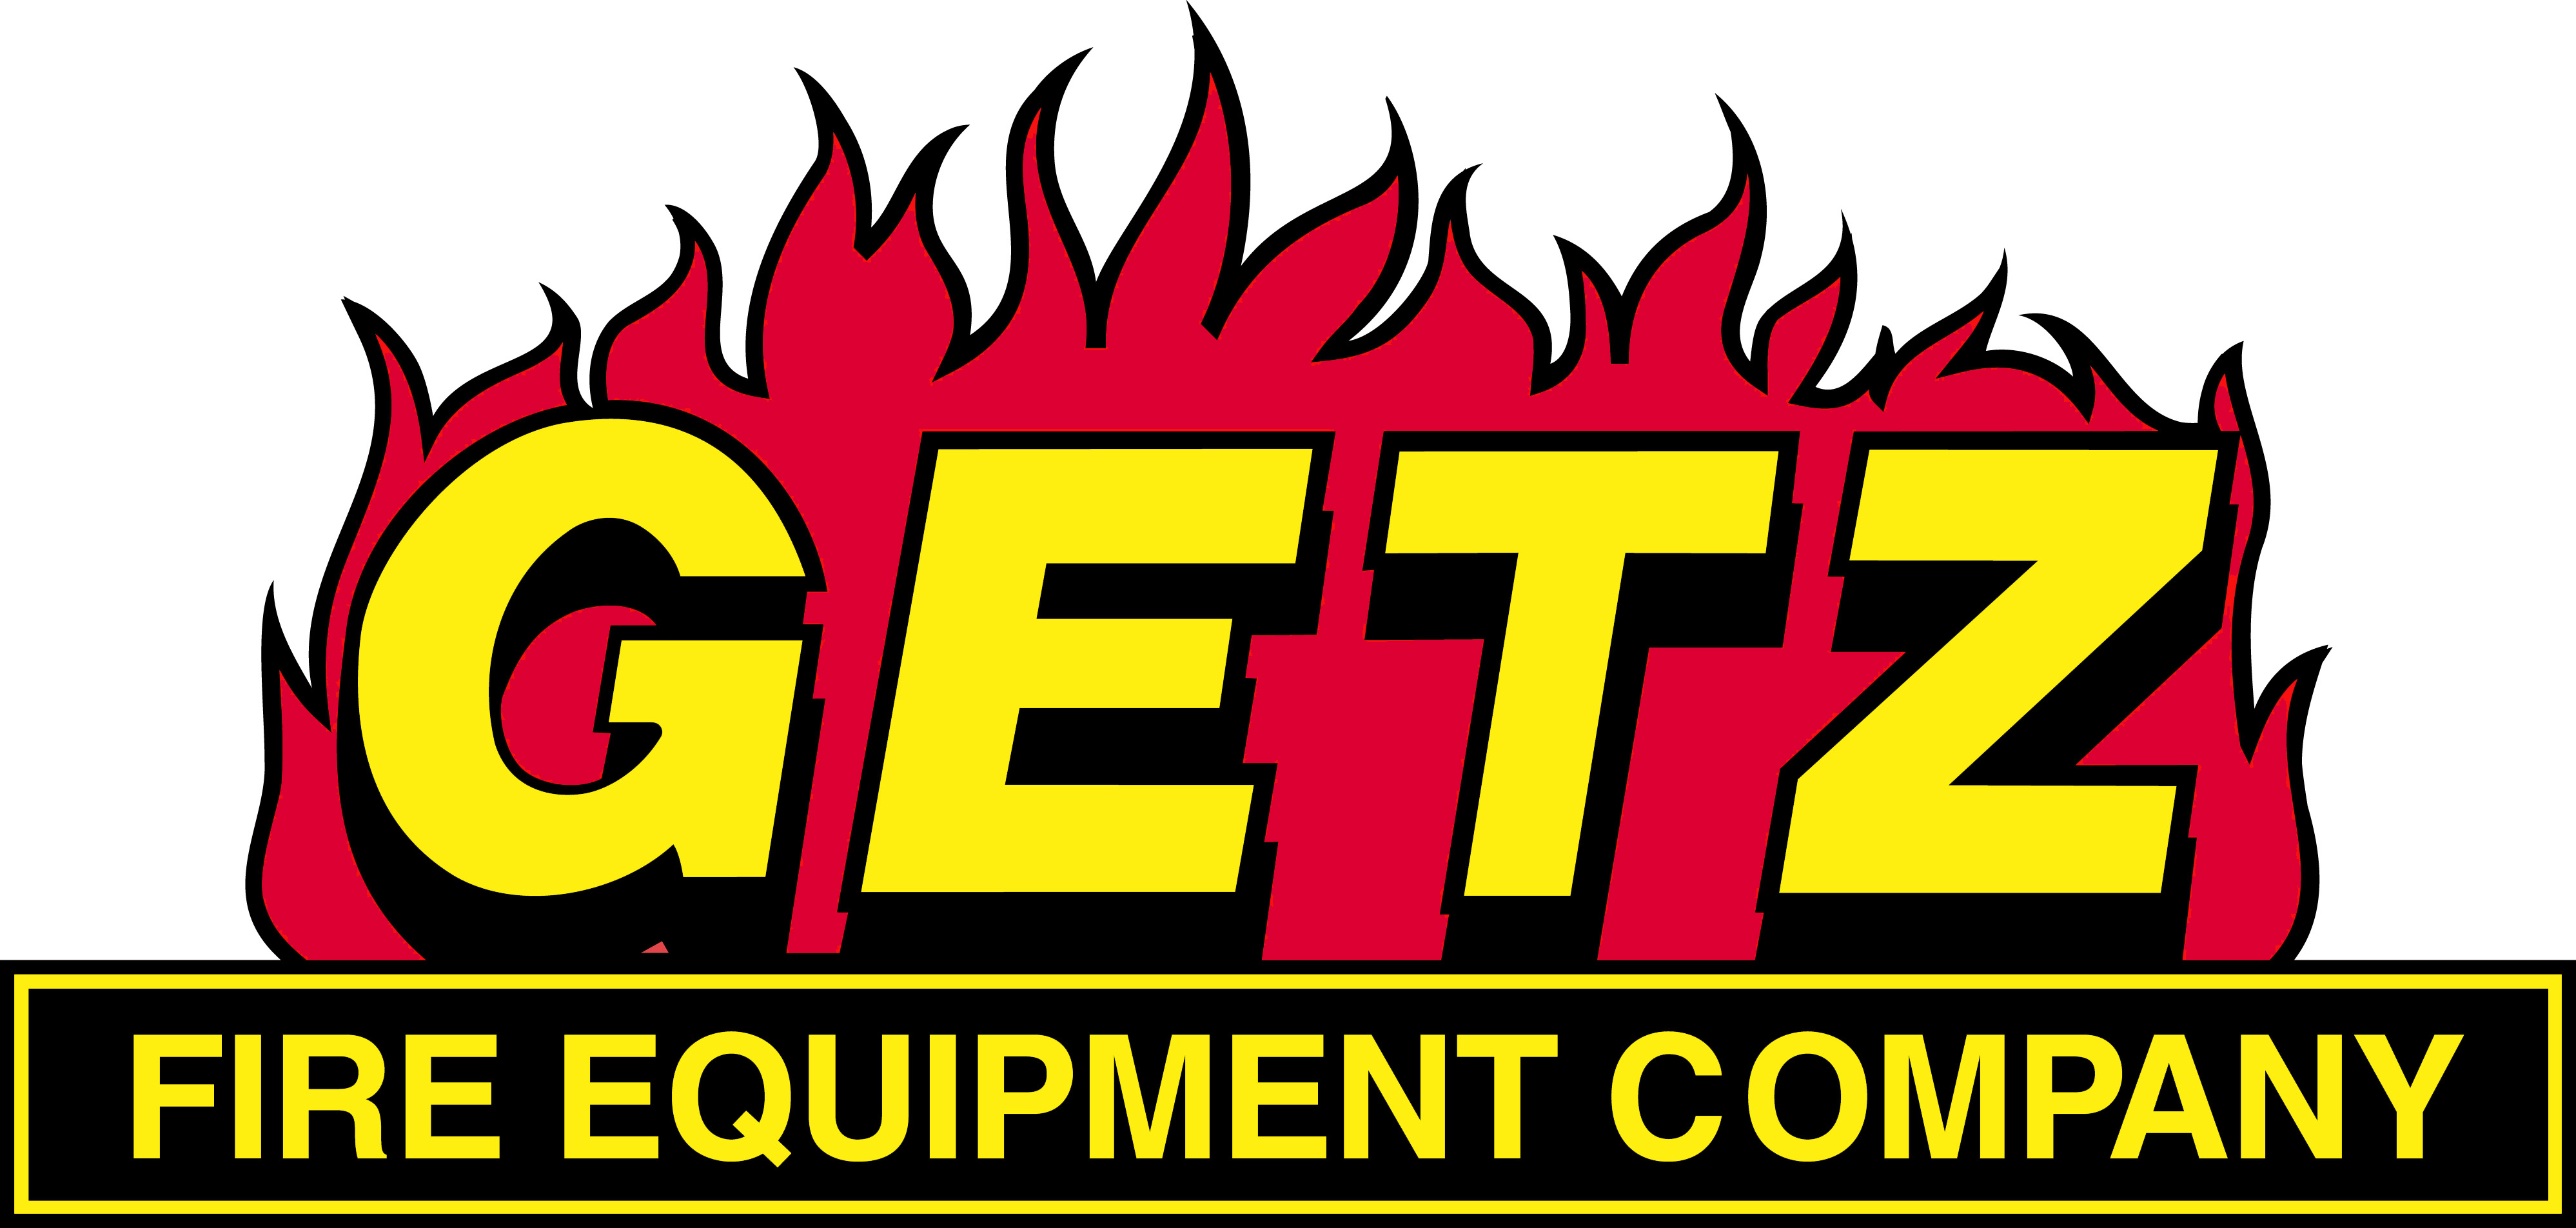 Getz Fire Equipment Co